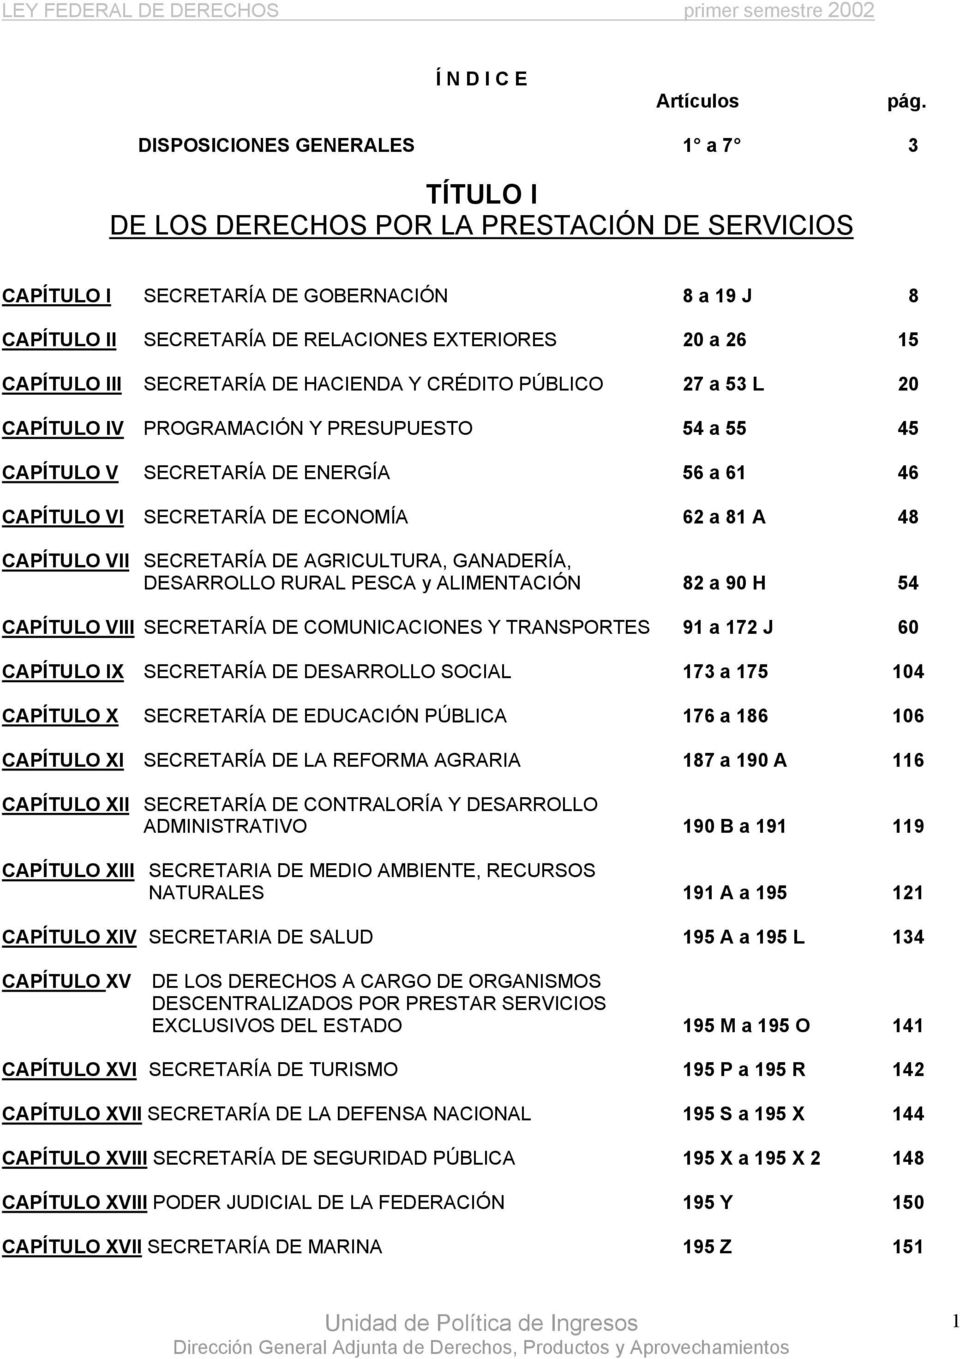 CAPÍTULO III SECRETARÍA DE HACIENDA Y CRÉDITO PÚBLICO 27 a 53 L 20 CAPÍTULO IV PROGRAMACIÓN Y PRESUPUESTO 54 a 55 45 CAPÍTULO V SECRETARÍA DE ENERGÍA 56 a 61 46 CAPÍTULO VI SECRETARÍA DE ECONOMÍA 62